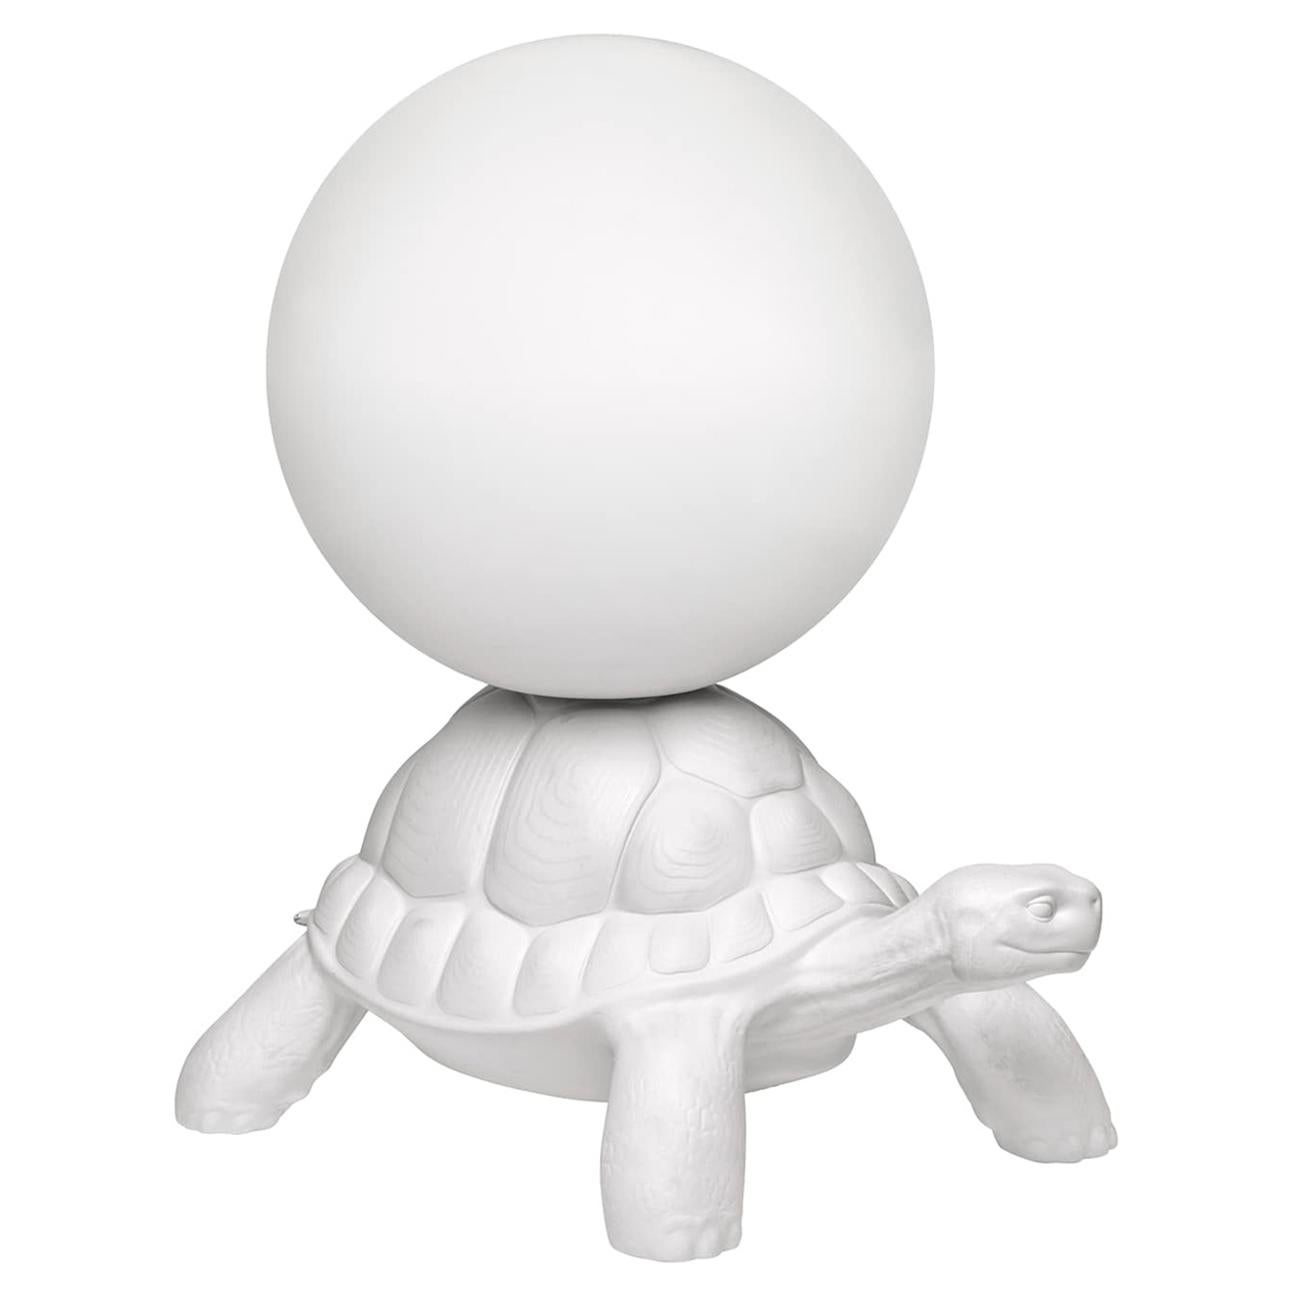 Carrylampe mit weißer Schildkröte, entworfen von Marcantonio